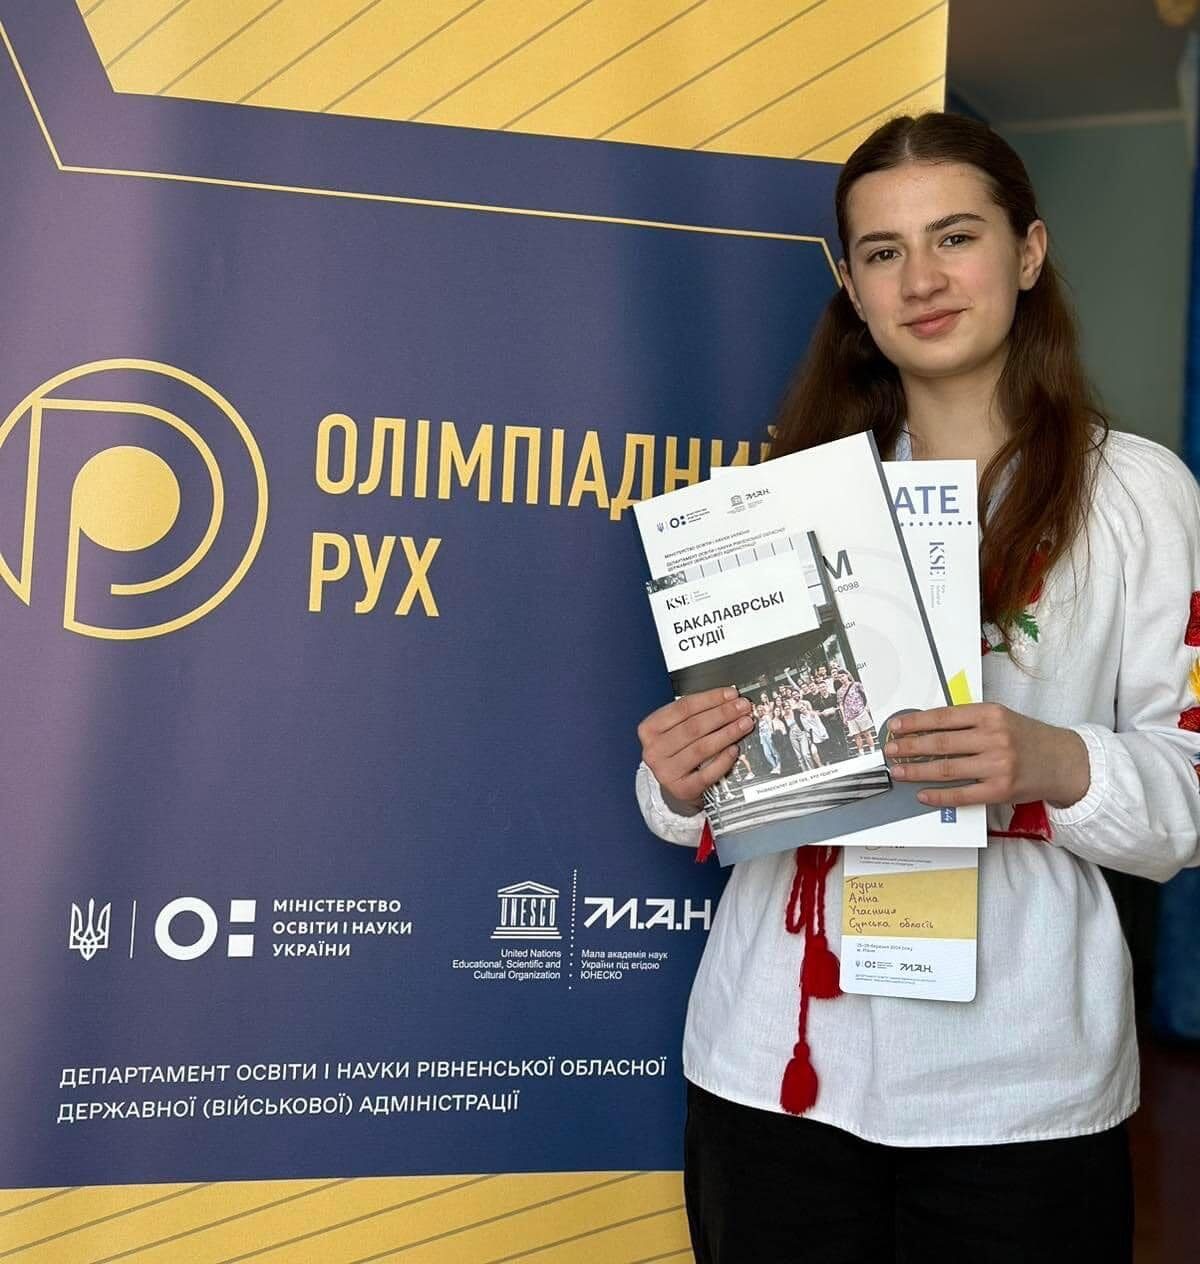 Аліна Бурик і Анна Кошарна – серед учнівської еліти України